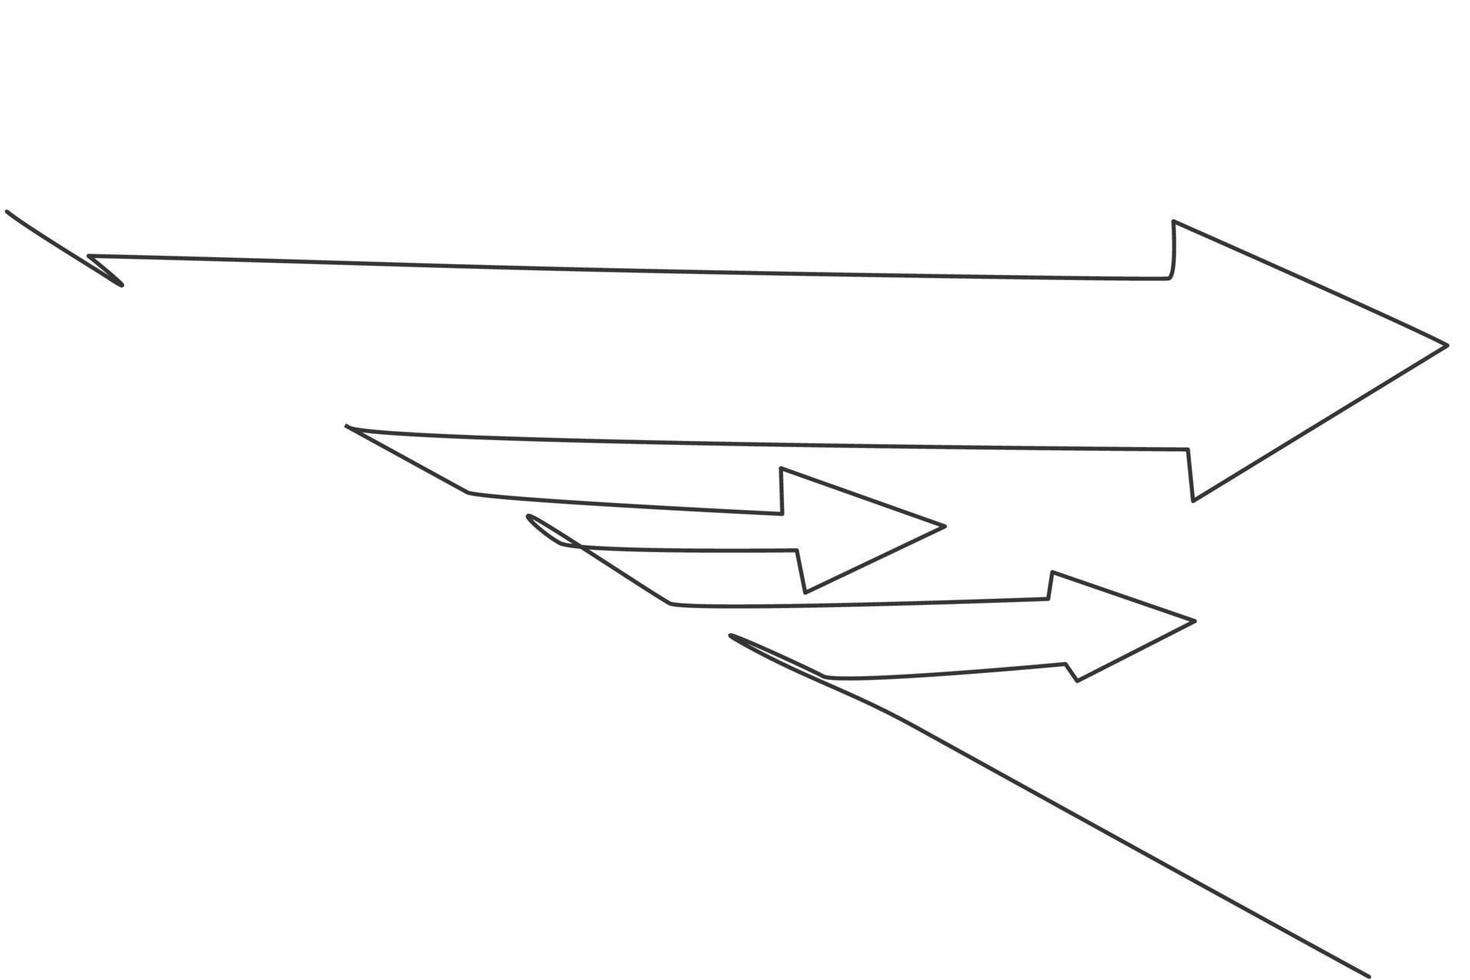 Kontinuierliche einzeilige Zeichnung von halten Sie sich positiv vorwärts bewegende Pfeile-Graph-Zeichen. Erfolg Geschäftsfortschritt Symbol minimalistisches Konzept. trendige Single-Line-Draw-Design-Vektorgrafik-Illustration vektor